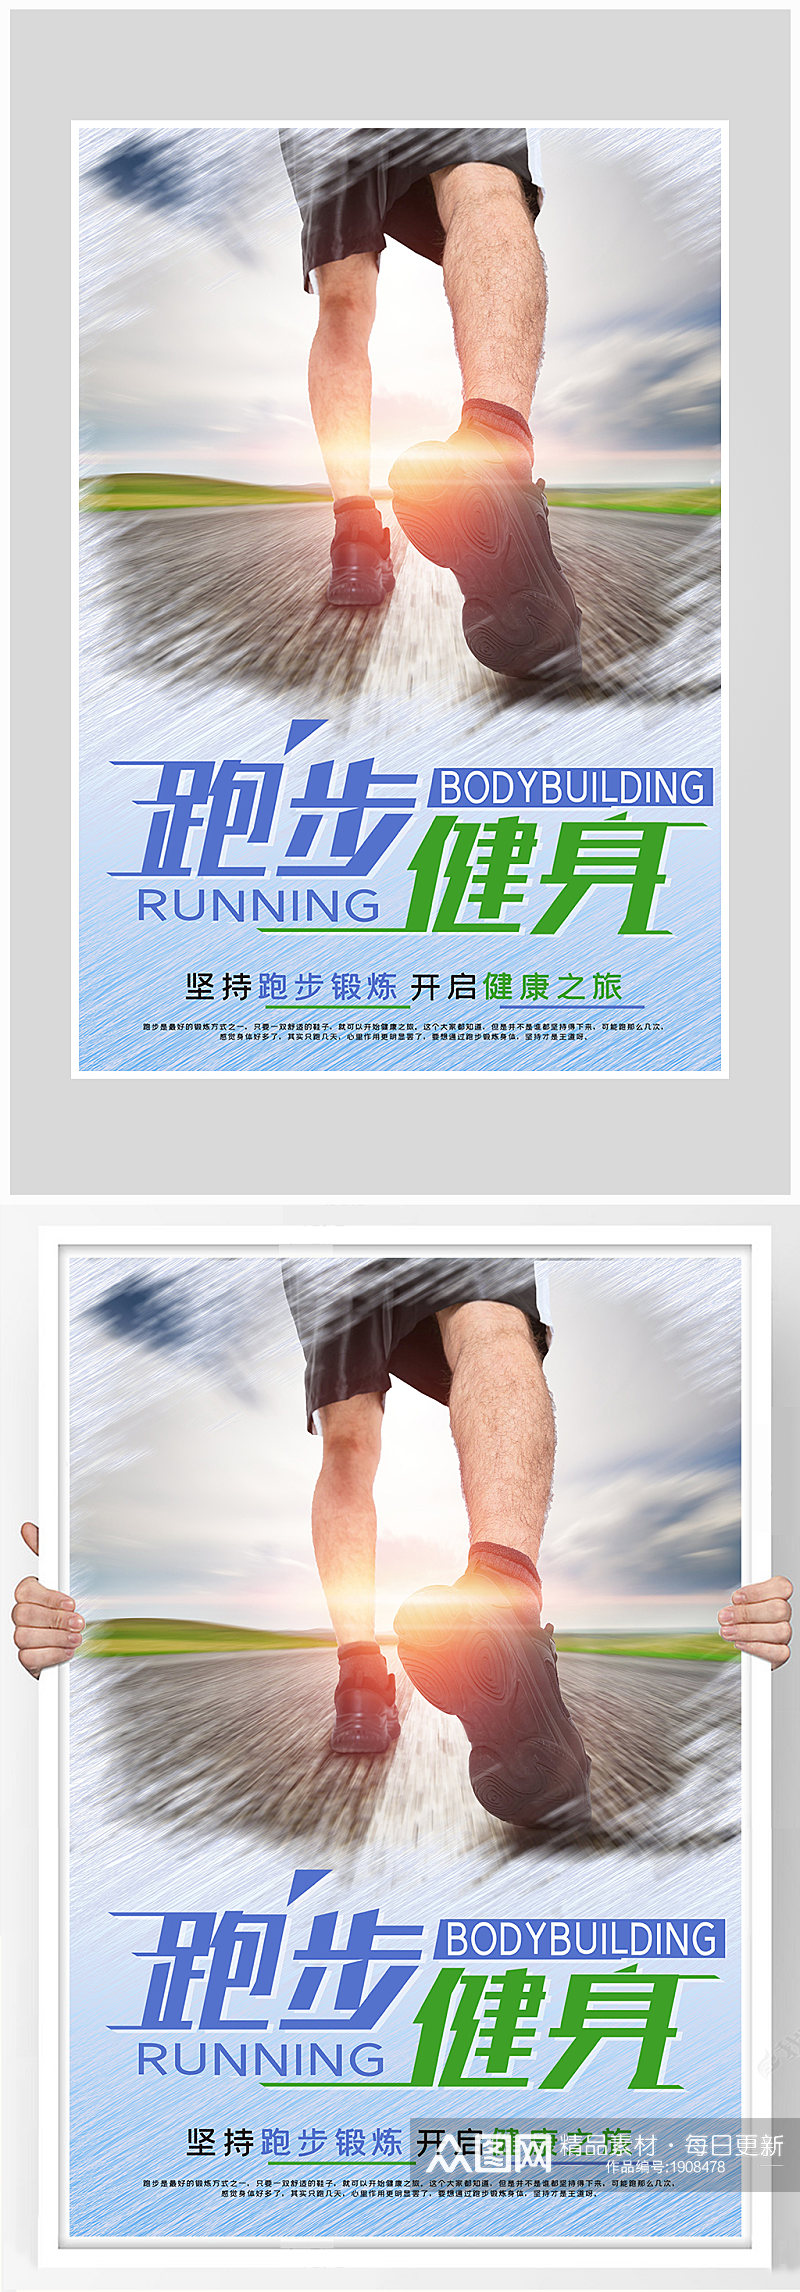 创意质感跑步健身海报设计素材